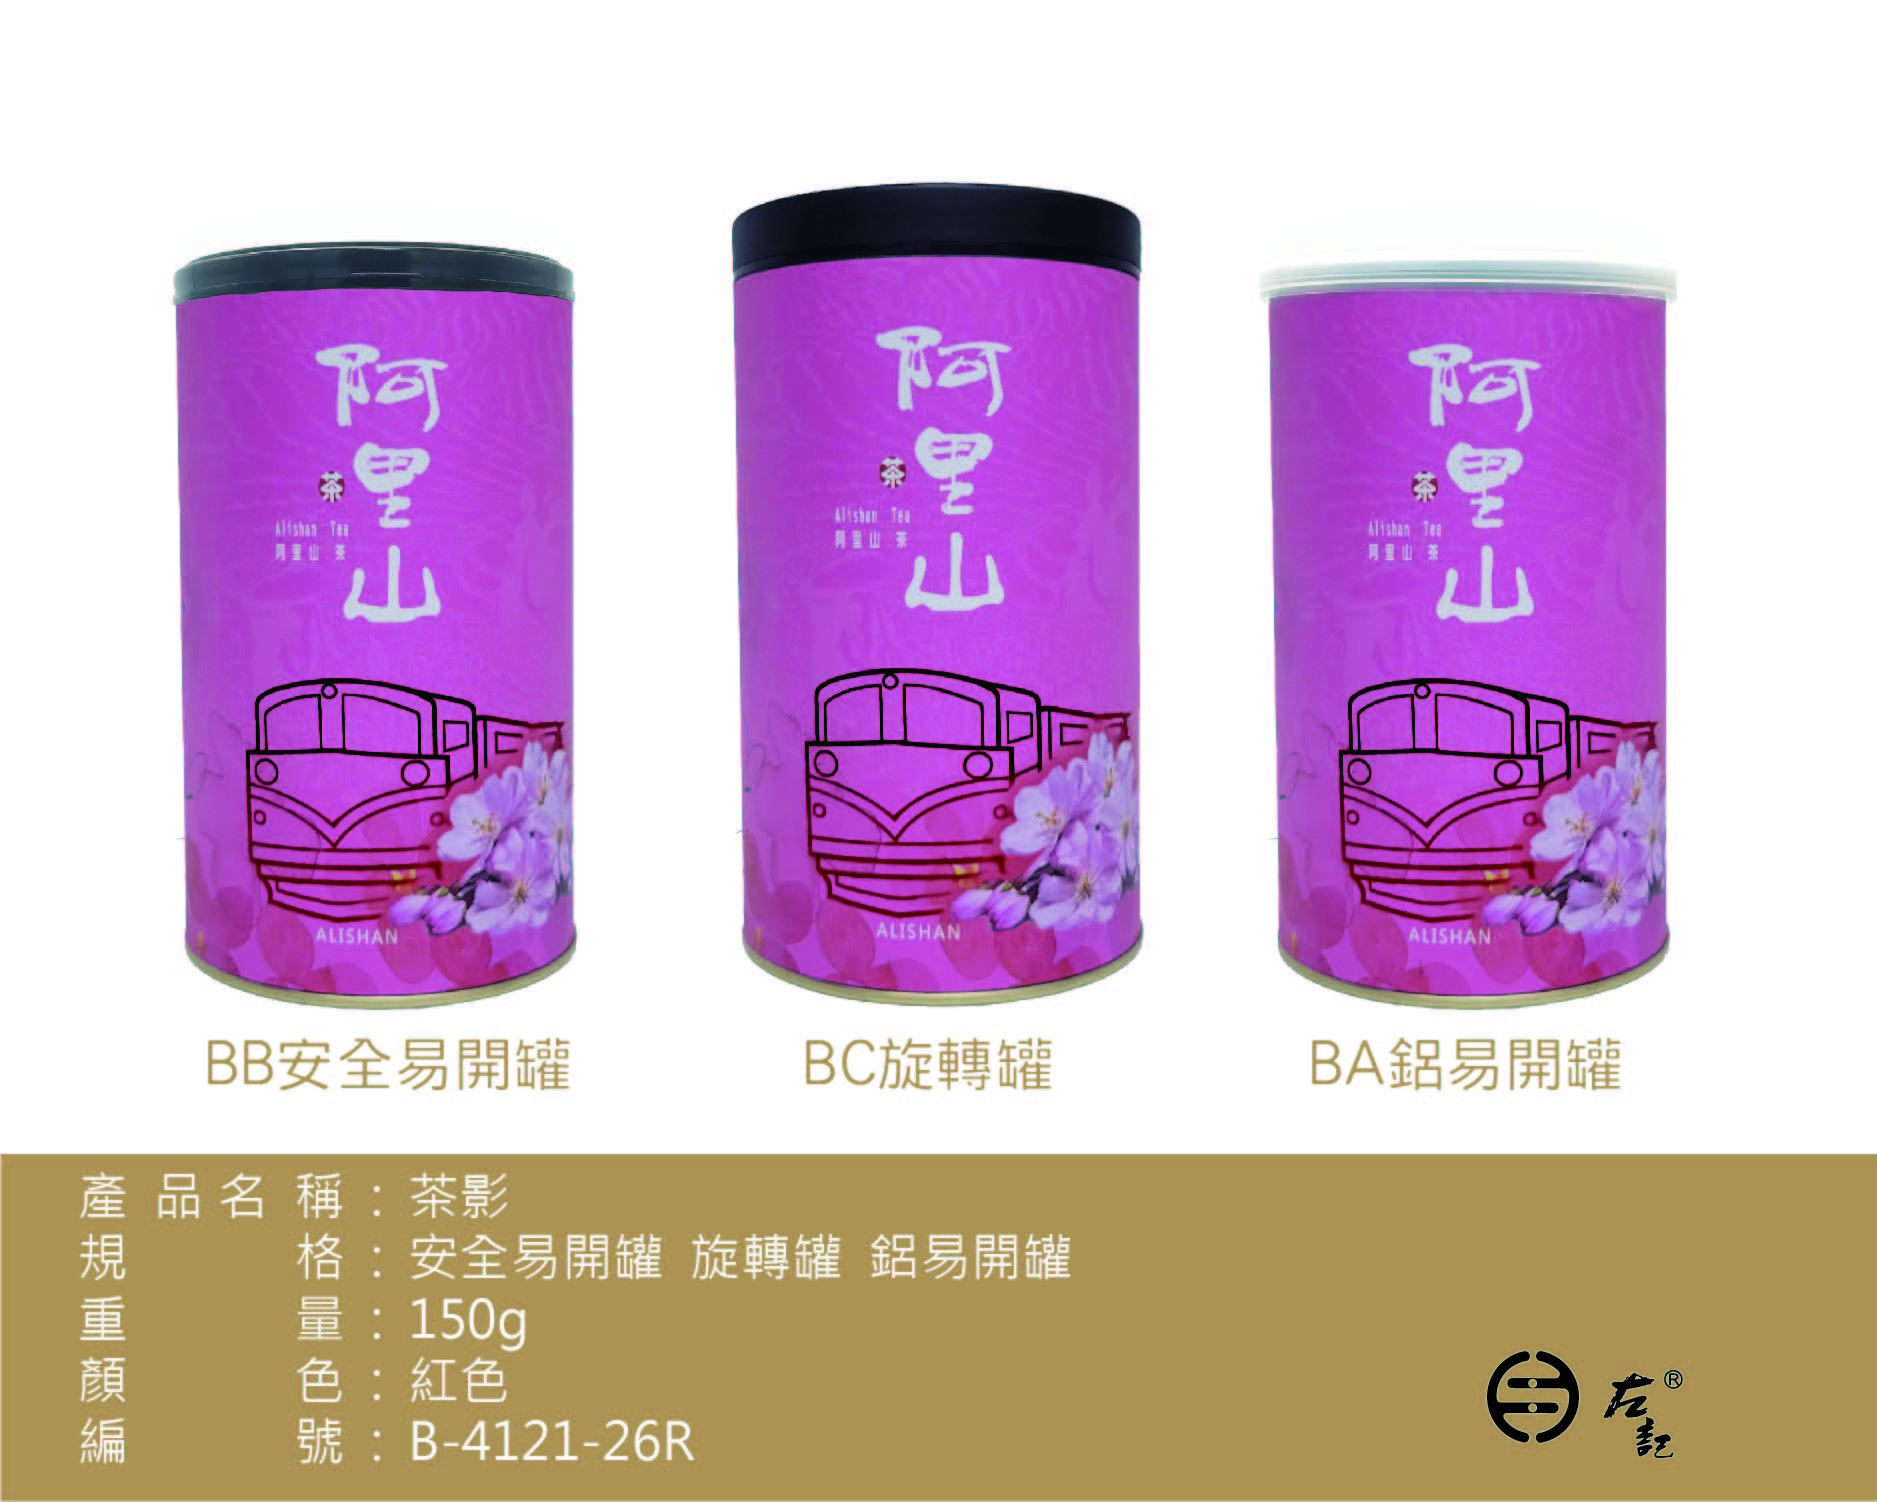 B-4121茶影-150g紙罐-阿里山茶(粉紅)